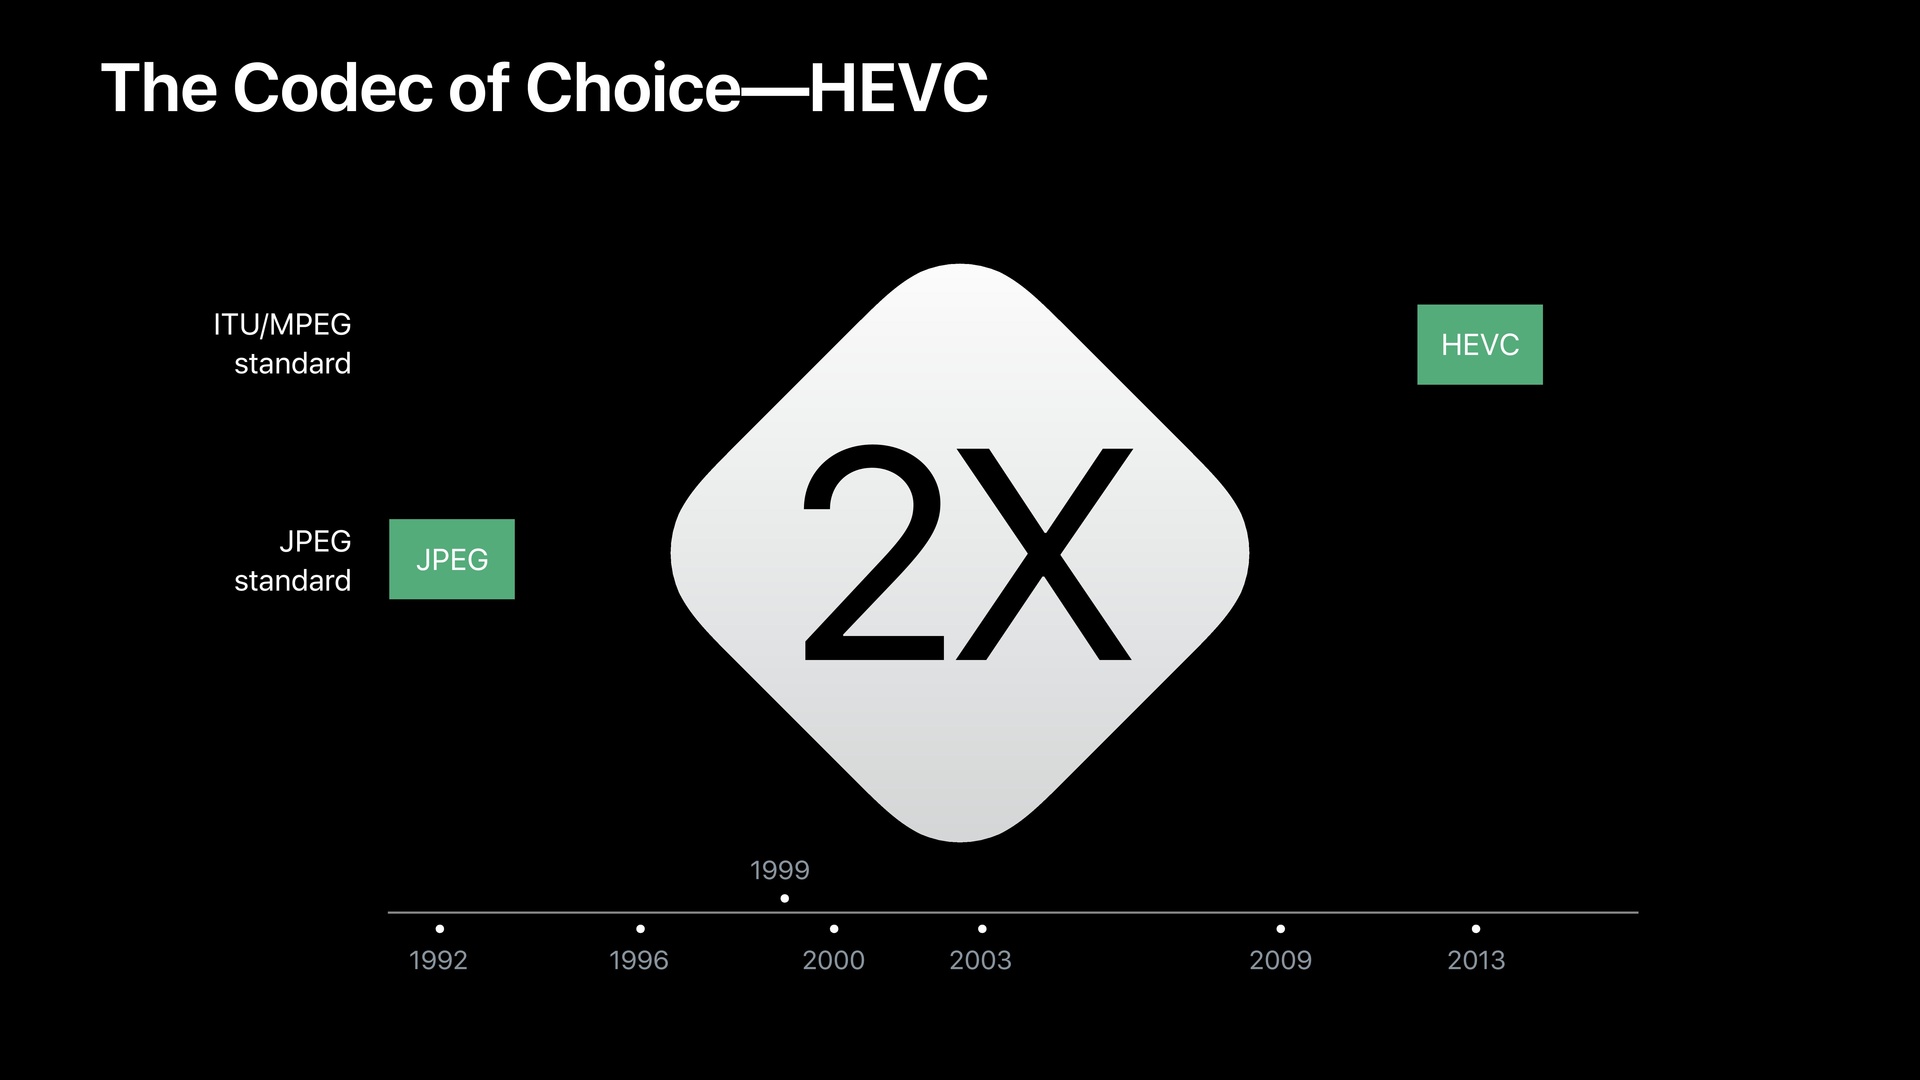 HEVC verspricht eine zweimal stärkere Kompression als JPEG